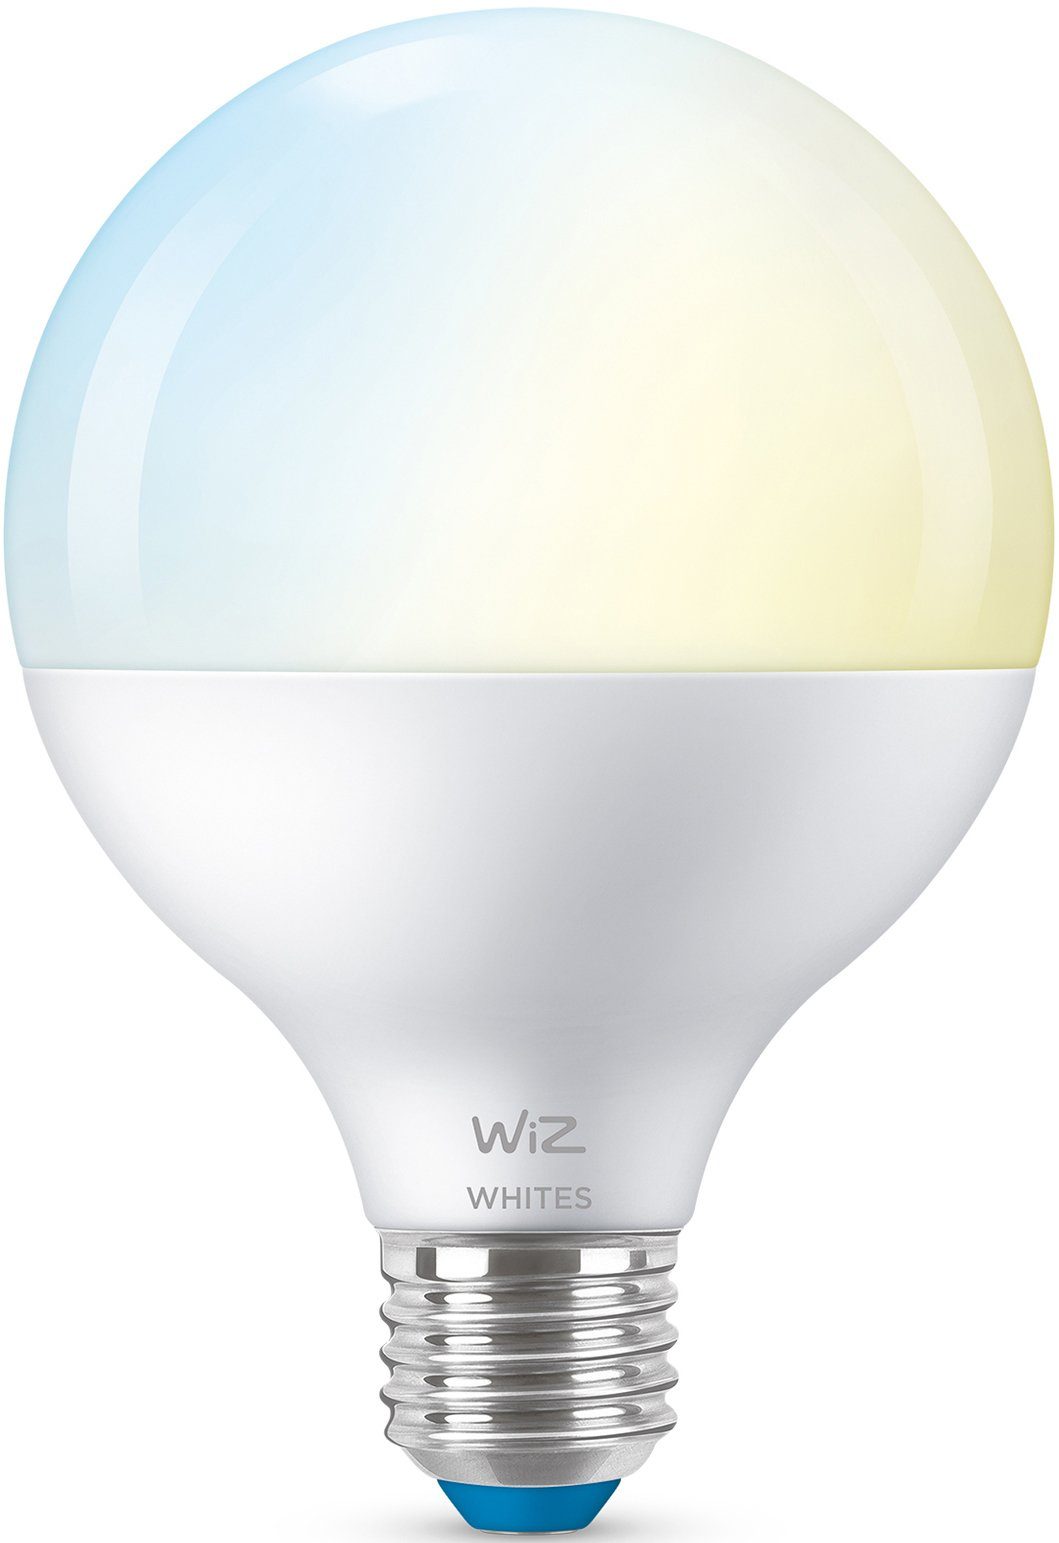 WiZ LED-Leuchtmittel White 75W E27 E27, smarte 1 matt Tunable Sie St., Globeform Einzelpack, Lampen Tunable Warmweiß, White LED Wiz Kreieren Beleuchtung mit